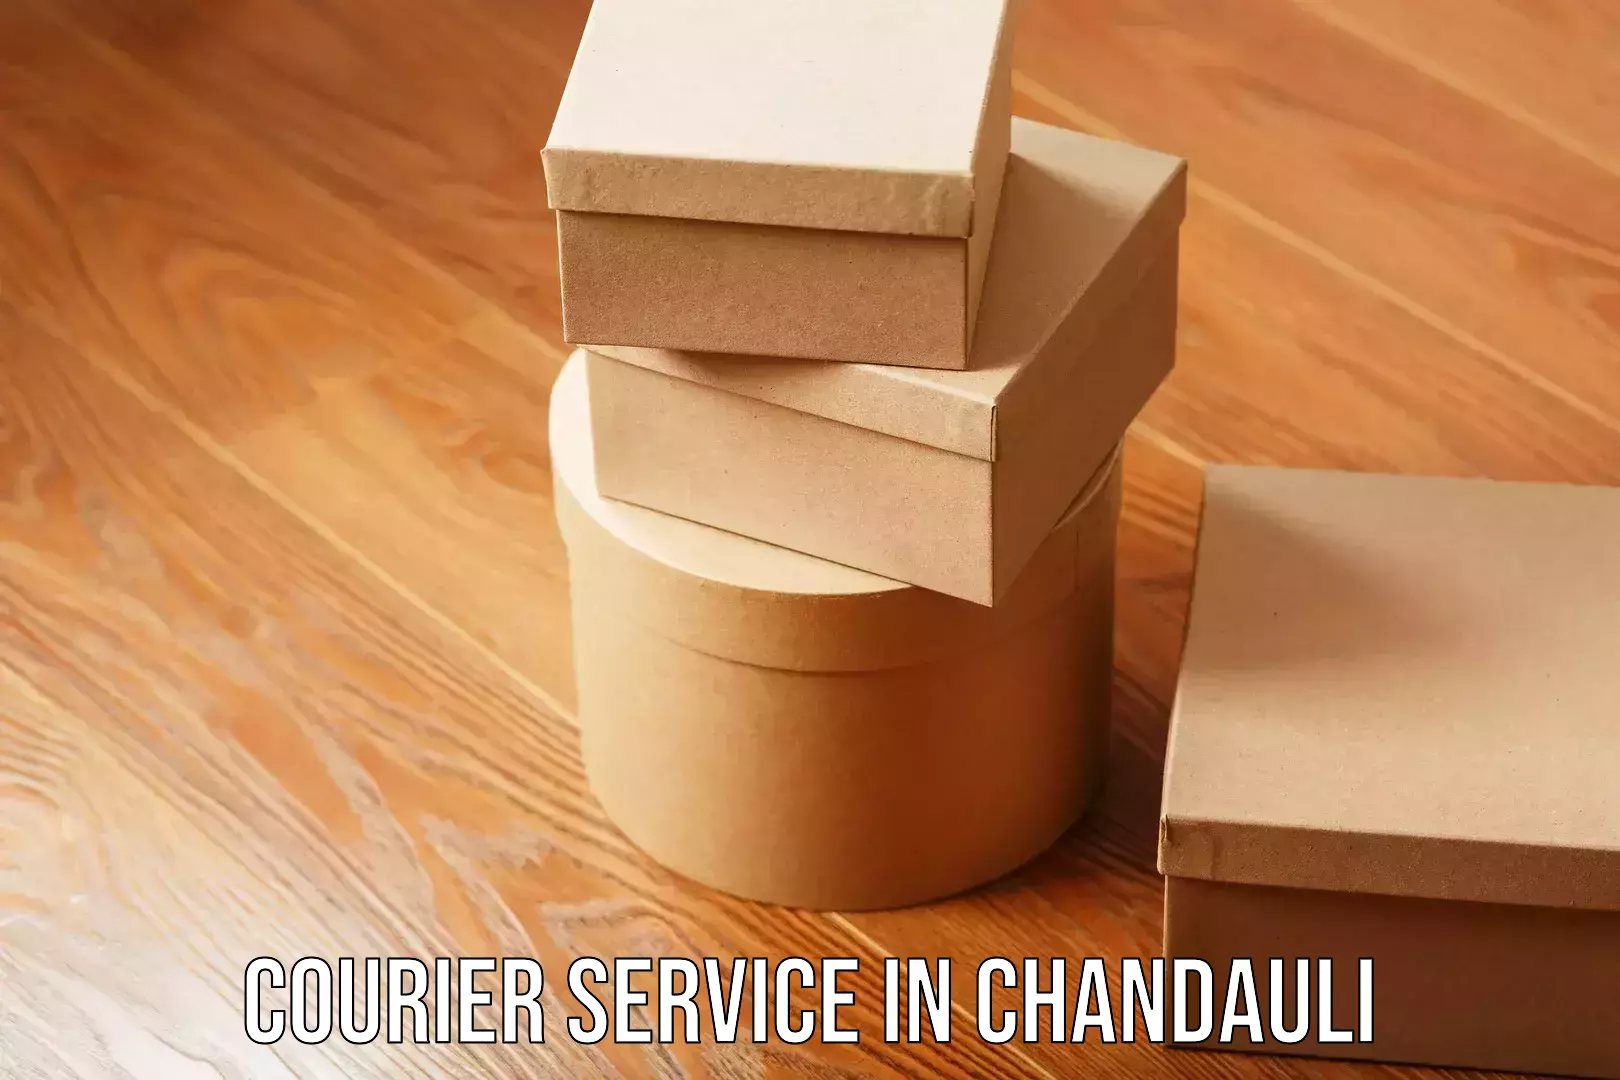 E-commerce shipping partnerships in Chandauli